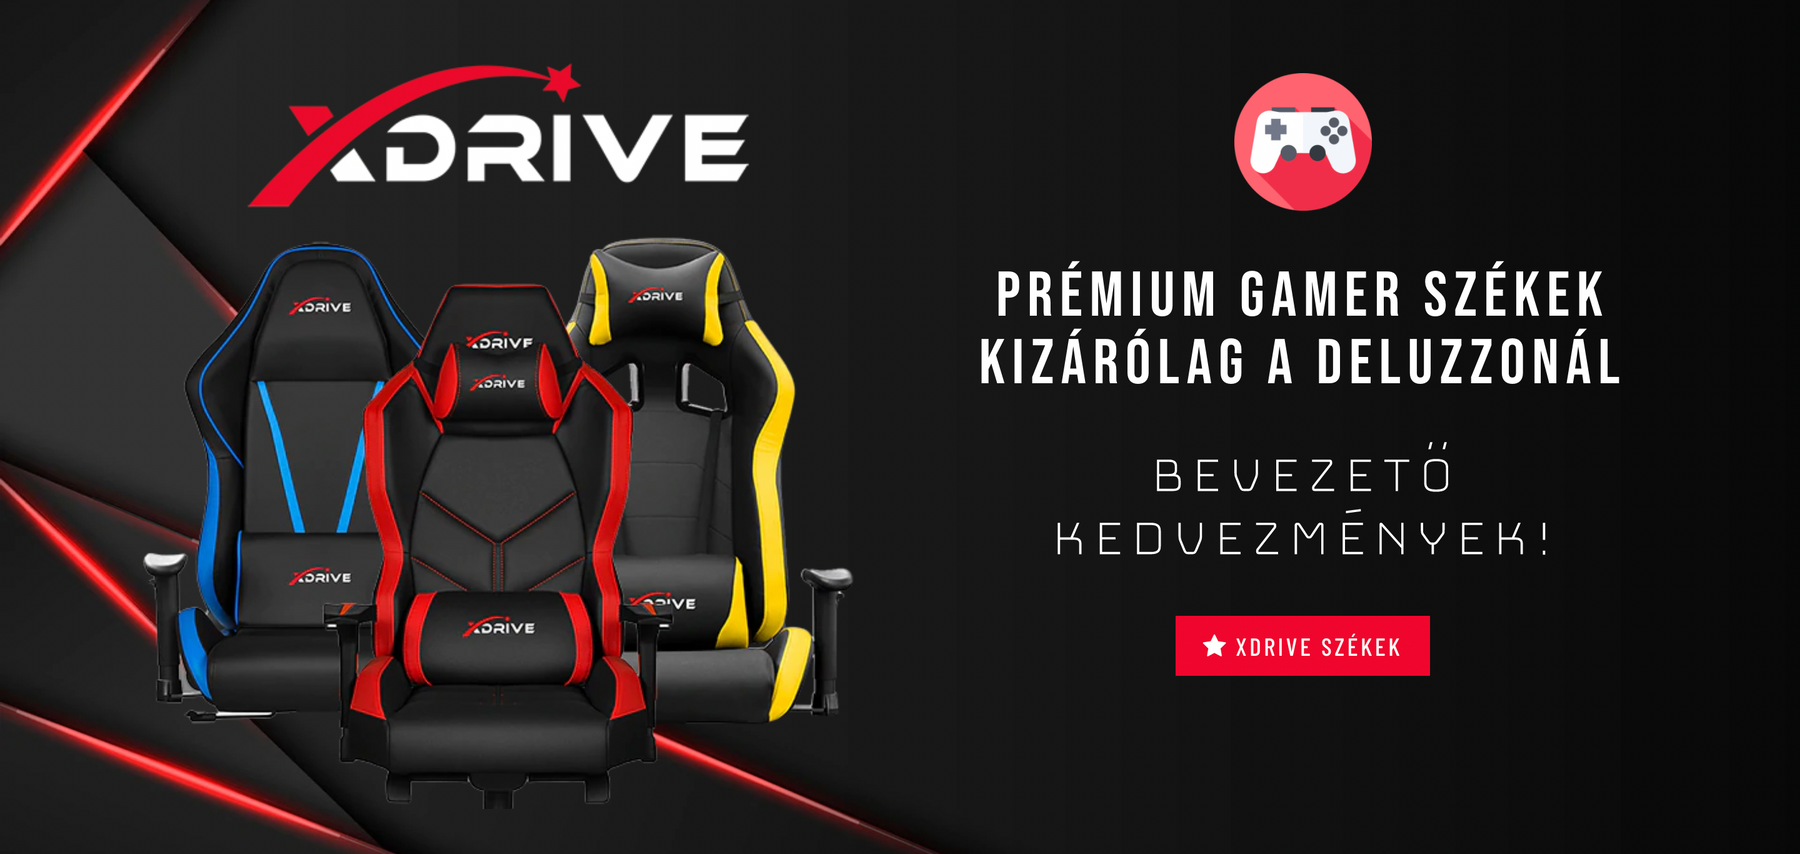 xDrive gamer székek -20% Bevezető Kedvezménnyel kizárólag a Deluzzonál